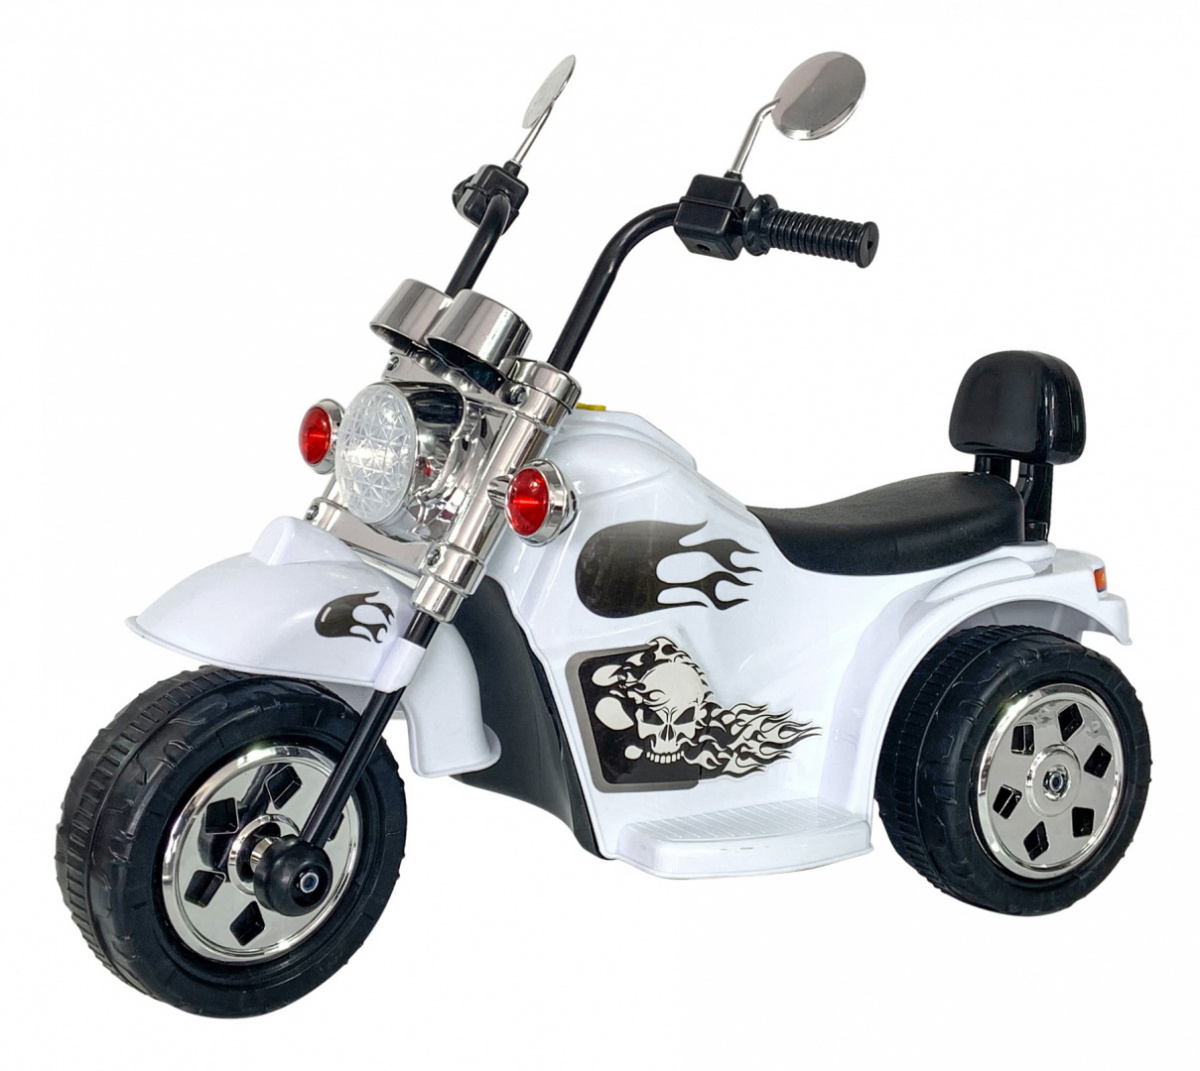  Dětská elektrická motorka Hot Chopper bílá